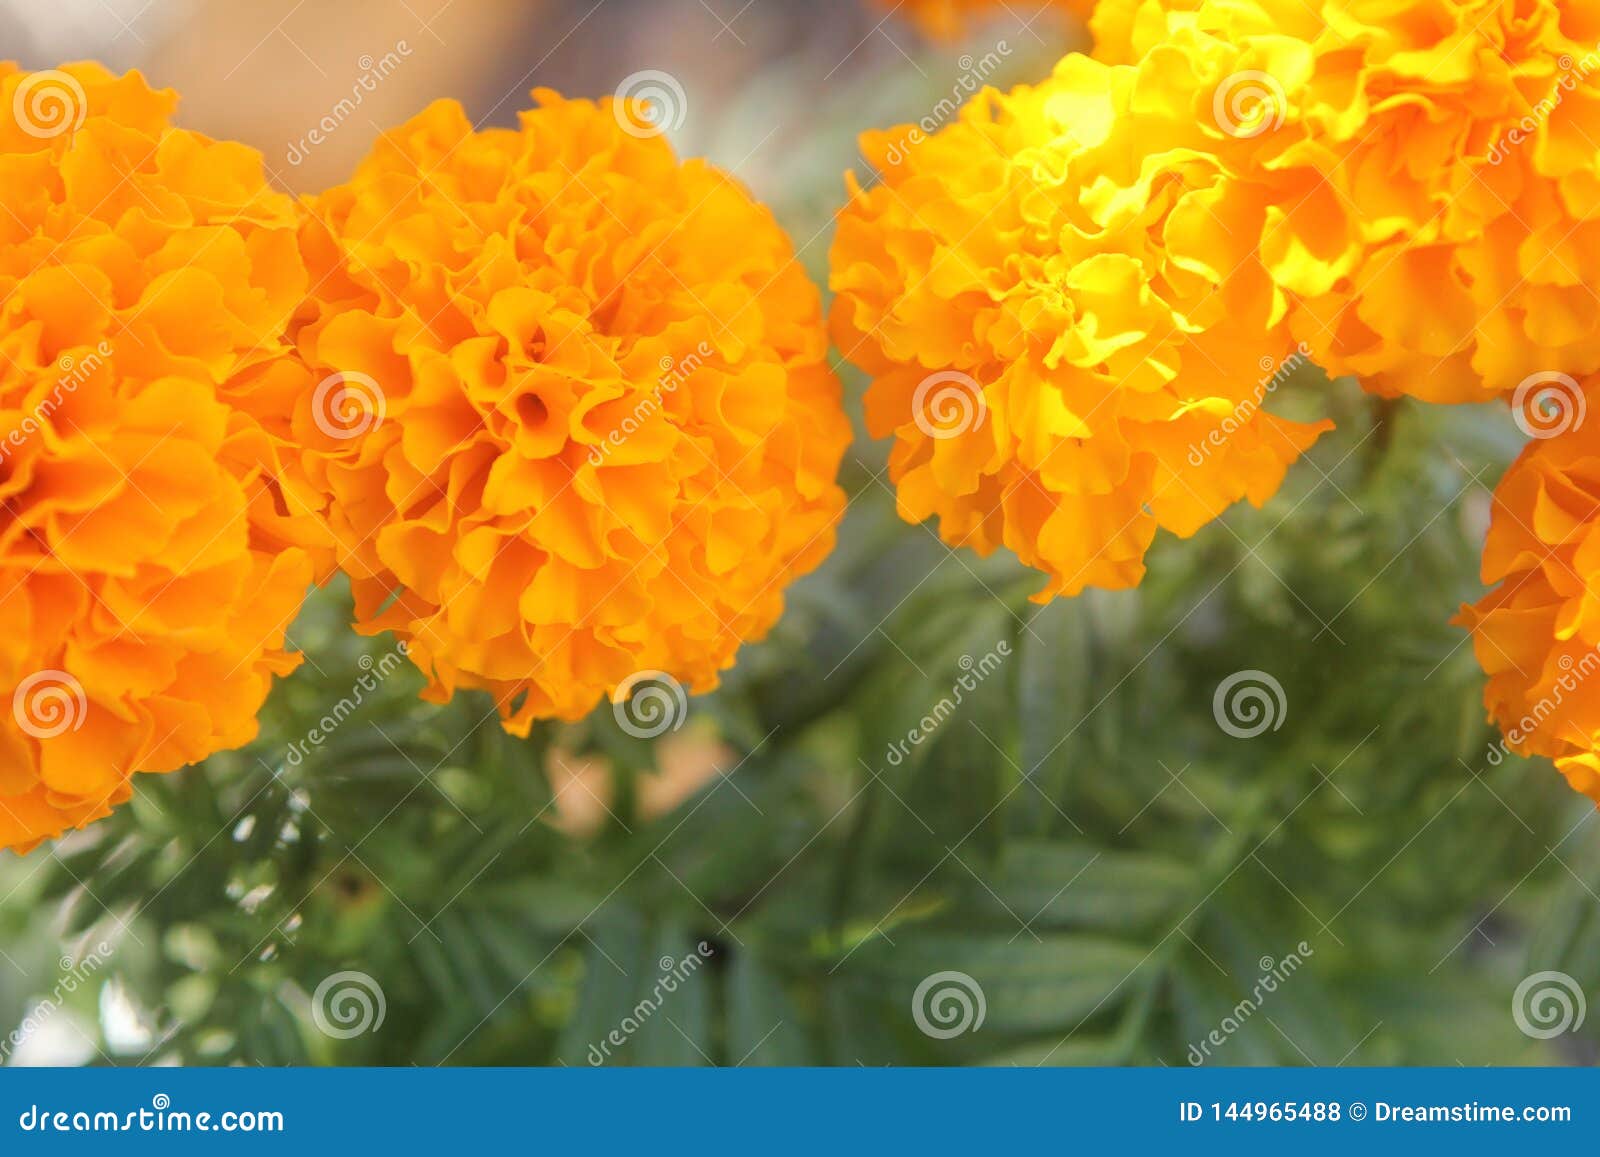 Dia De Los Muertos Marigolds Foto de archivo - Imagen de florista, hermoso:  144965488